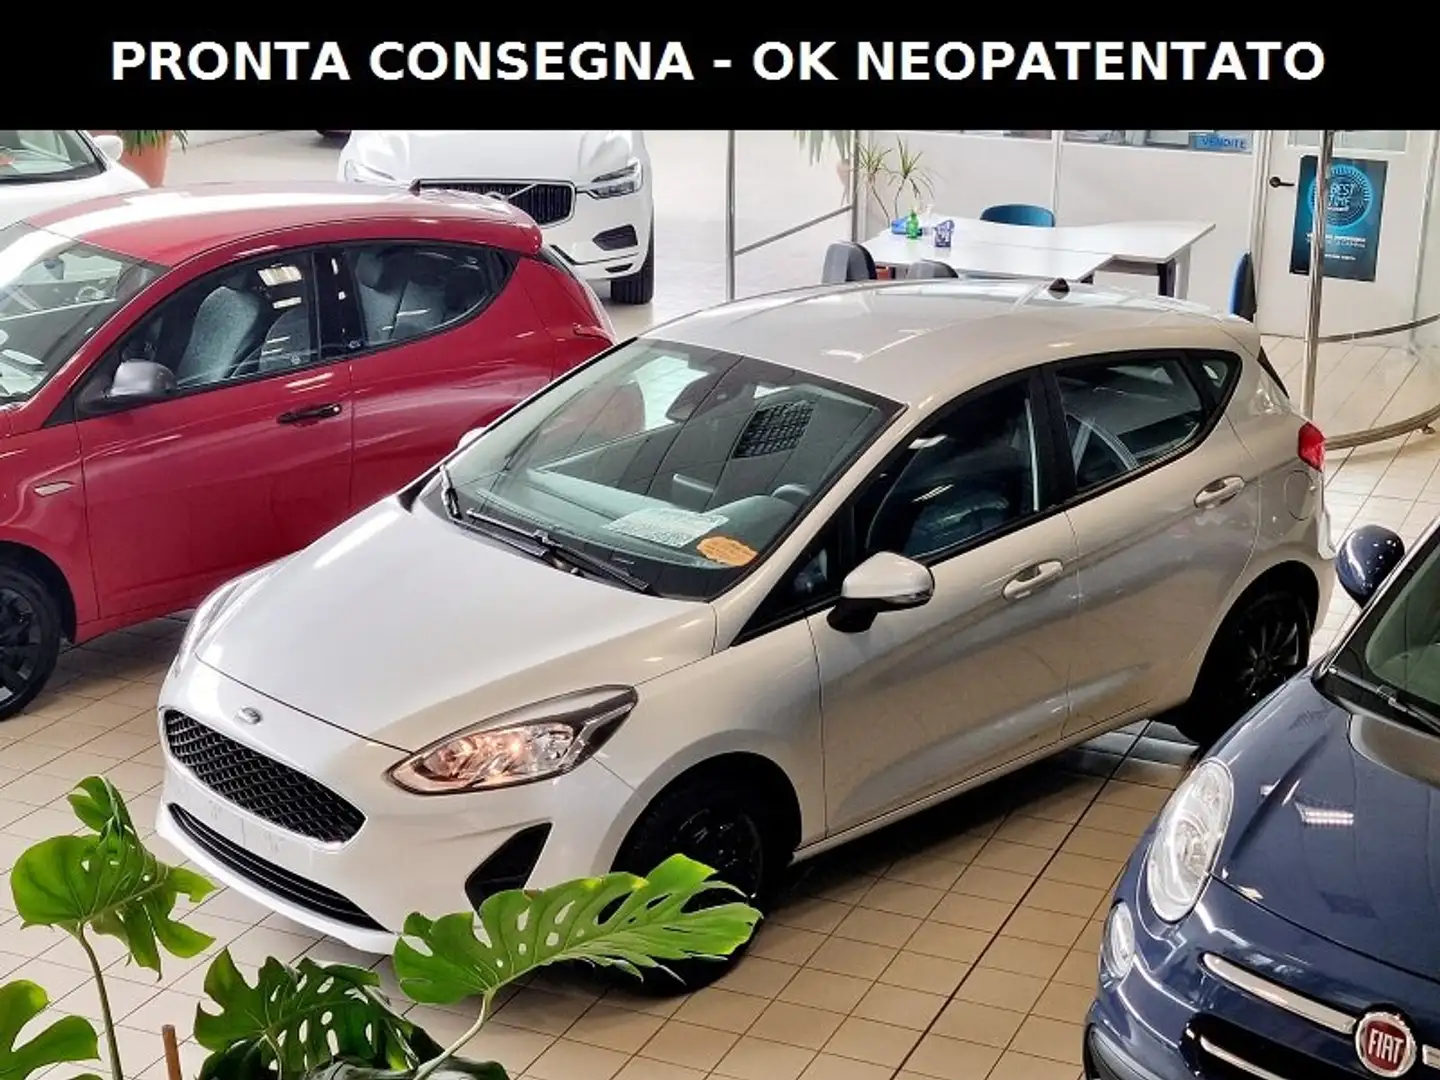 usato Ford Fiesta SUV/Fuoristrada/Pick-up a Rubano - Padova - Pd per €  11.800,-